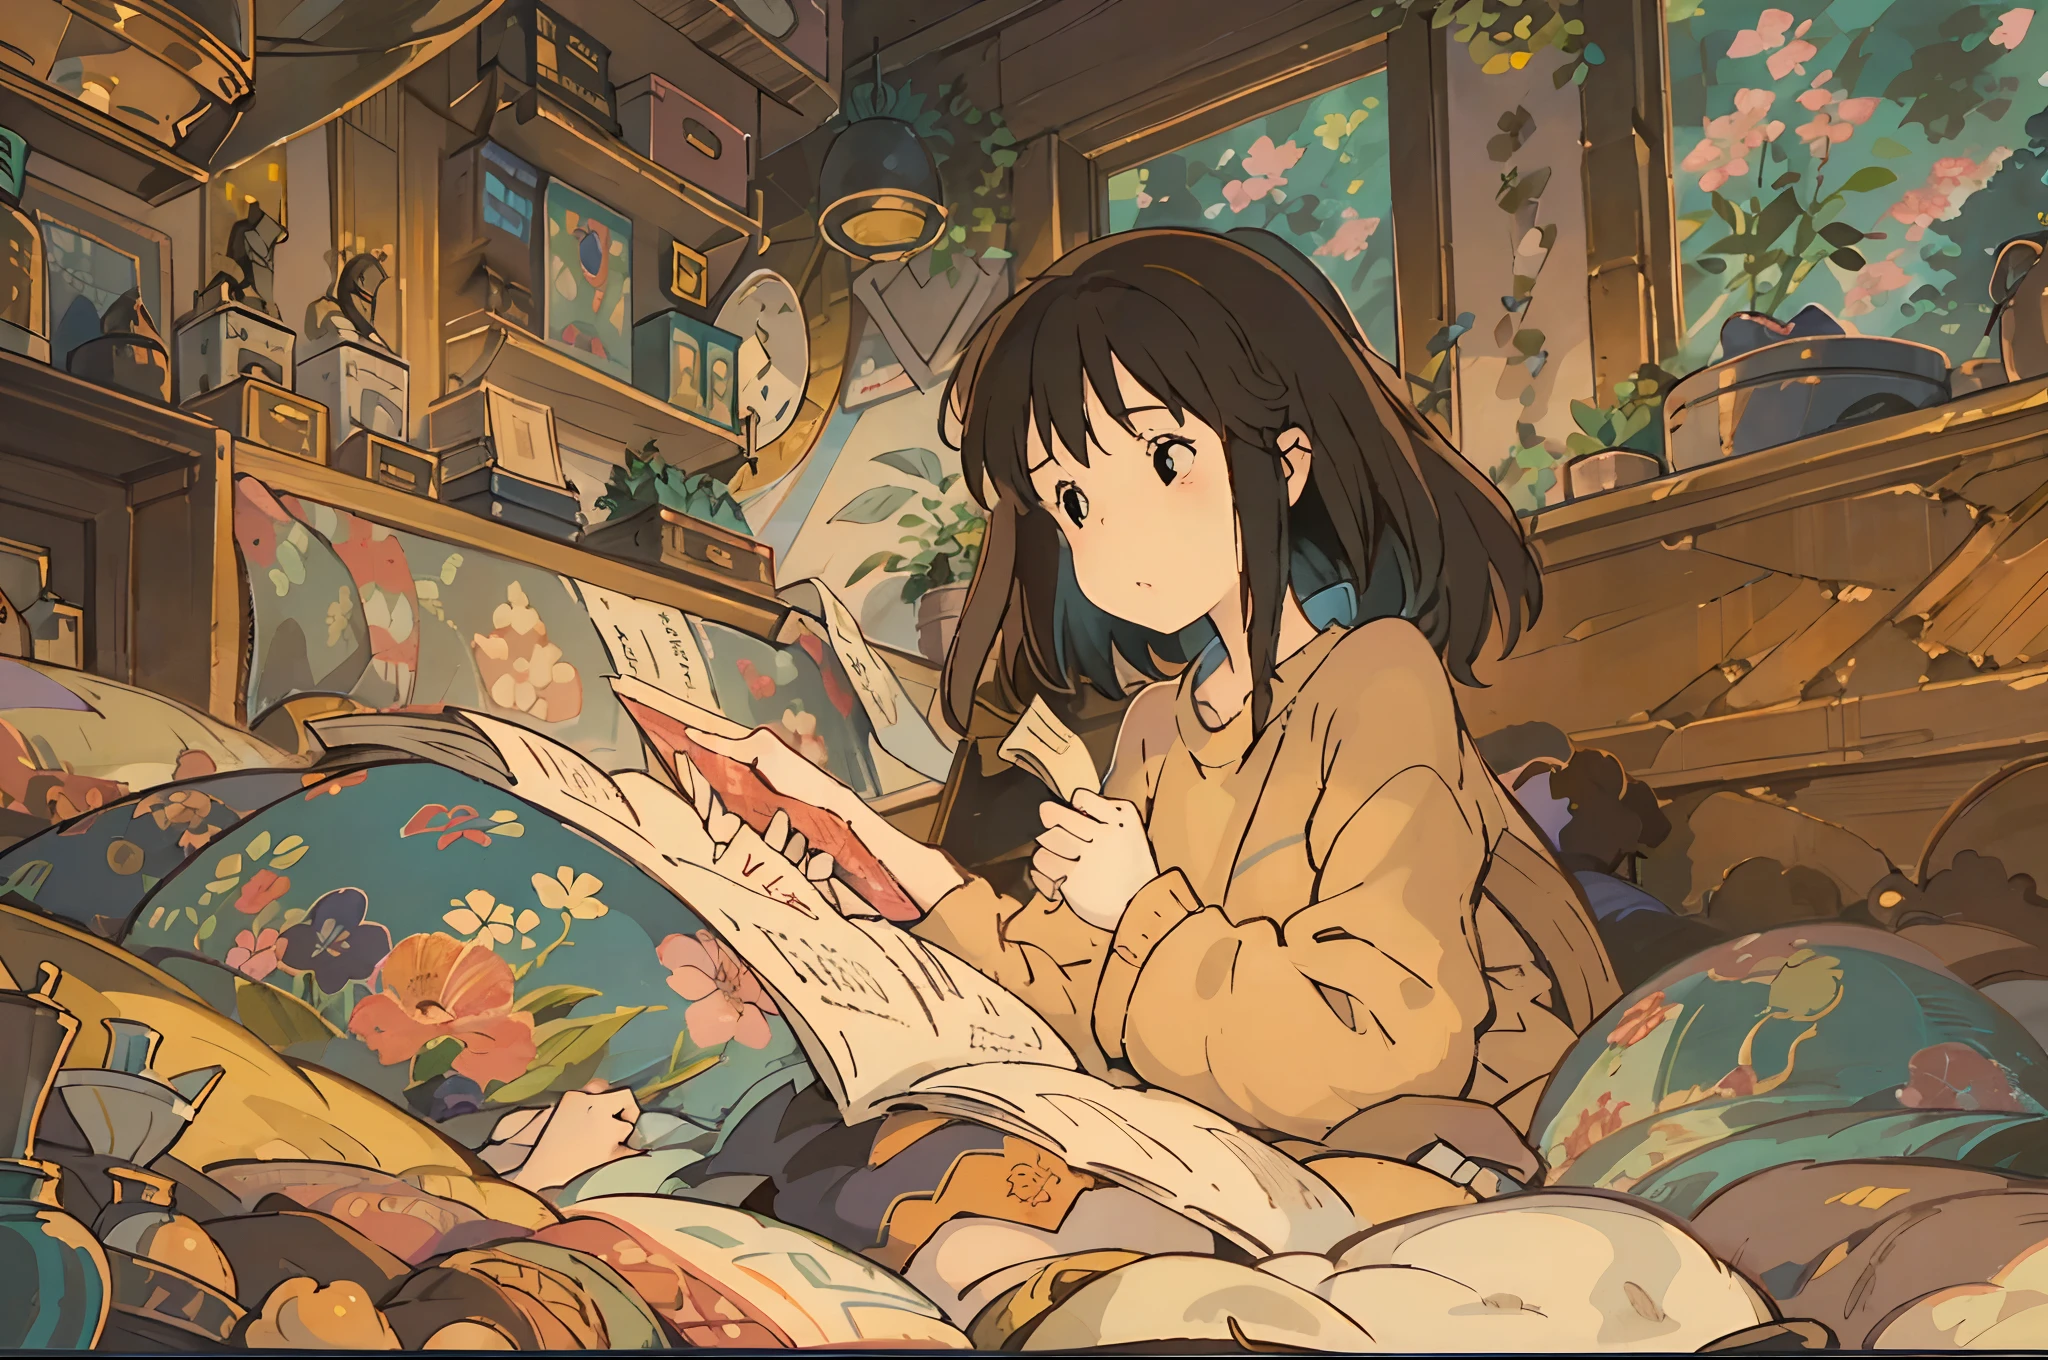 Uma ilustração digital de 2 meninas totalmente absorvidas na leitura em uma cama confortável, inspirado no estilo de Hayao Miyazaki. A obra de arte deve ser preenchida com detalhes encantadores e cativantes, irradiando um toque de fantasia. As meninas devem ter lindo, olhos cativantes que são intrinsecamente detalhados, bem como lábios maravilhosamente delicados. A cena deve ser visualmente atraente, Com um ambiente aconchegante e convidativo. A ilustração deve ser criada usando vários meios, como ilustração digital, para melhorar o efeito visual geral. A atenção aos detalhes deve ser notável, garantindo que cada elemento seja retratado com a máxima precisão. A imagem deve possuir uma qualidade extremamente alta, com resolução de 4k ou 8k, e ser uma obra-prima por si só. O estilo da obra de arte deve capturar a essência das obras renomadas de Hayao Miyazaki, apresentando uma mistura única de imaginação, narrativa, e visuais vibrantes. As cores utilizadas devem ser quentes e convidativas, criando uma atmosfera relaxante e aconchegante. A iluminação deve ser habilmente renderizada, iluminando a cena de forma suave e gentil. Geral, A ilustração deve transportar os espectadores para um mundo de maravilhas e magia, onde podem mergulhar plenamente na alegria da leitura. A combinação do estilo icônico de Miyazaki, detalhes encantadores, tons quentes, e uma pitada de fantasia deve se unir para criar uma obra de arte inspiradora e cativante.